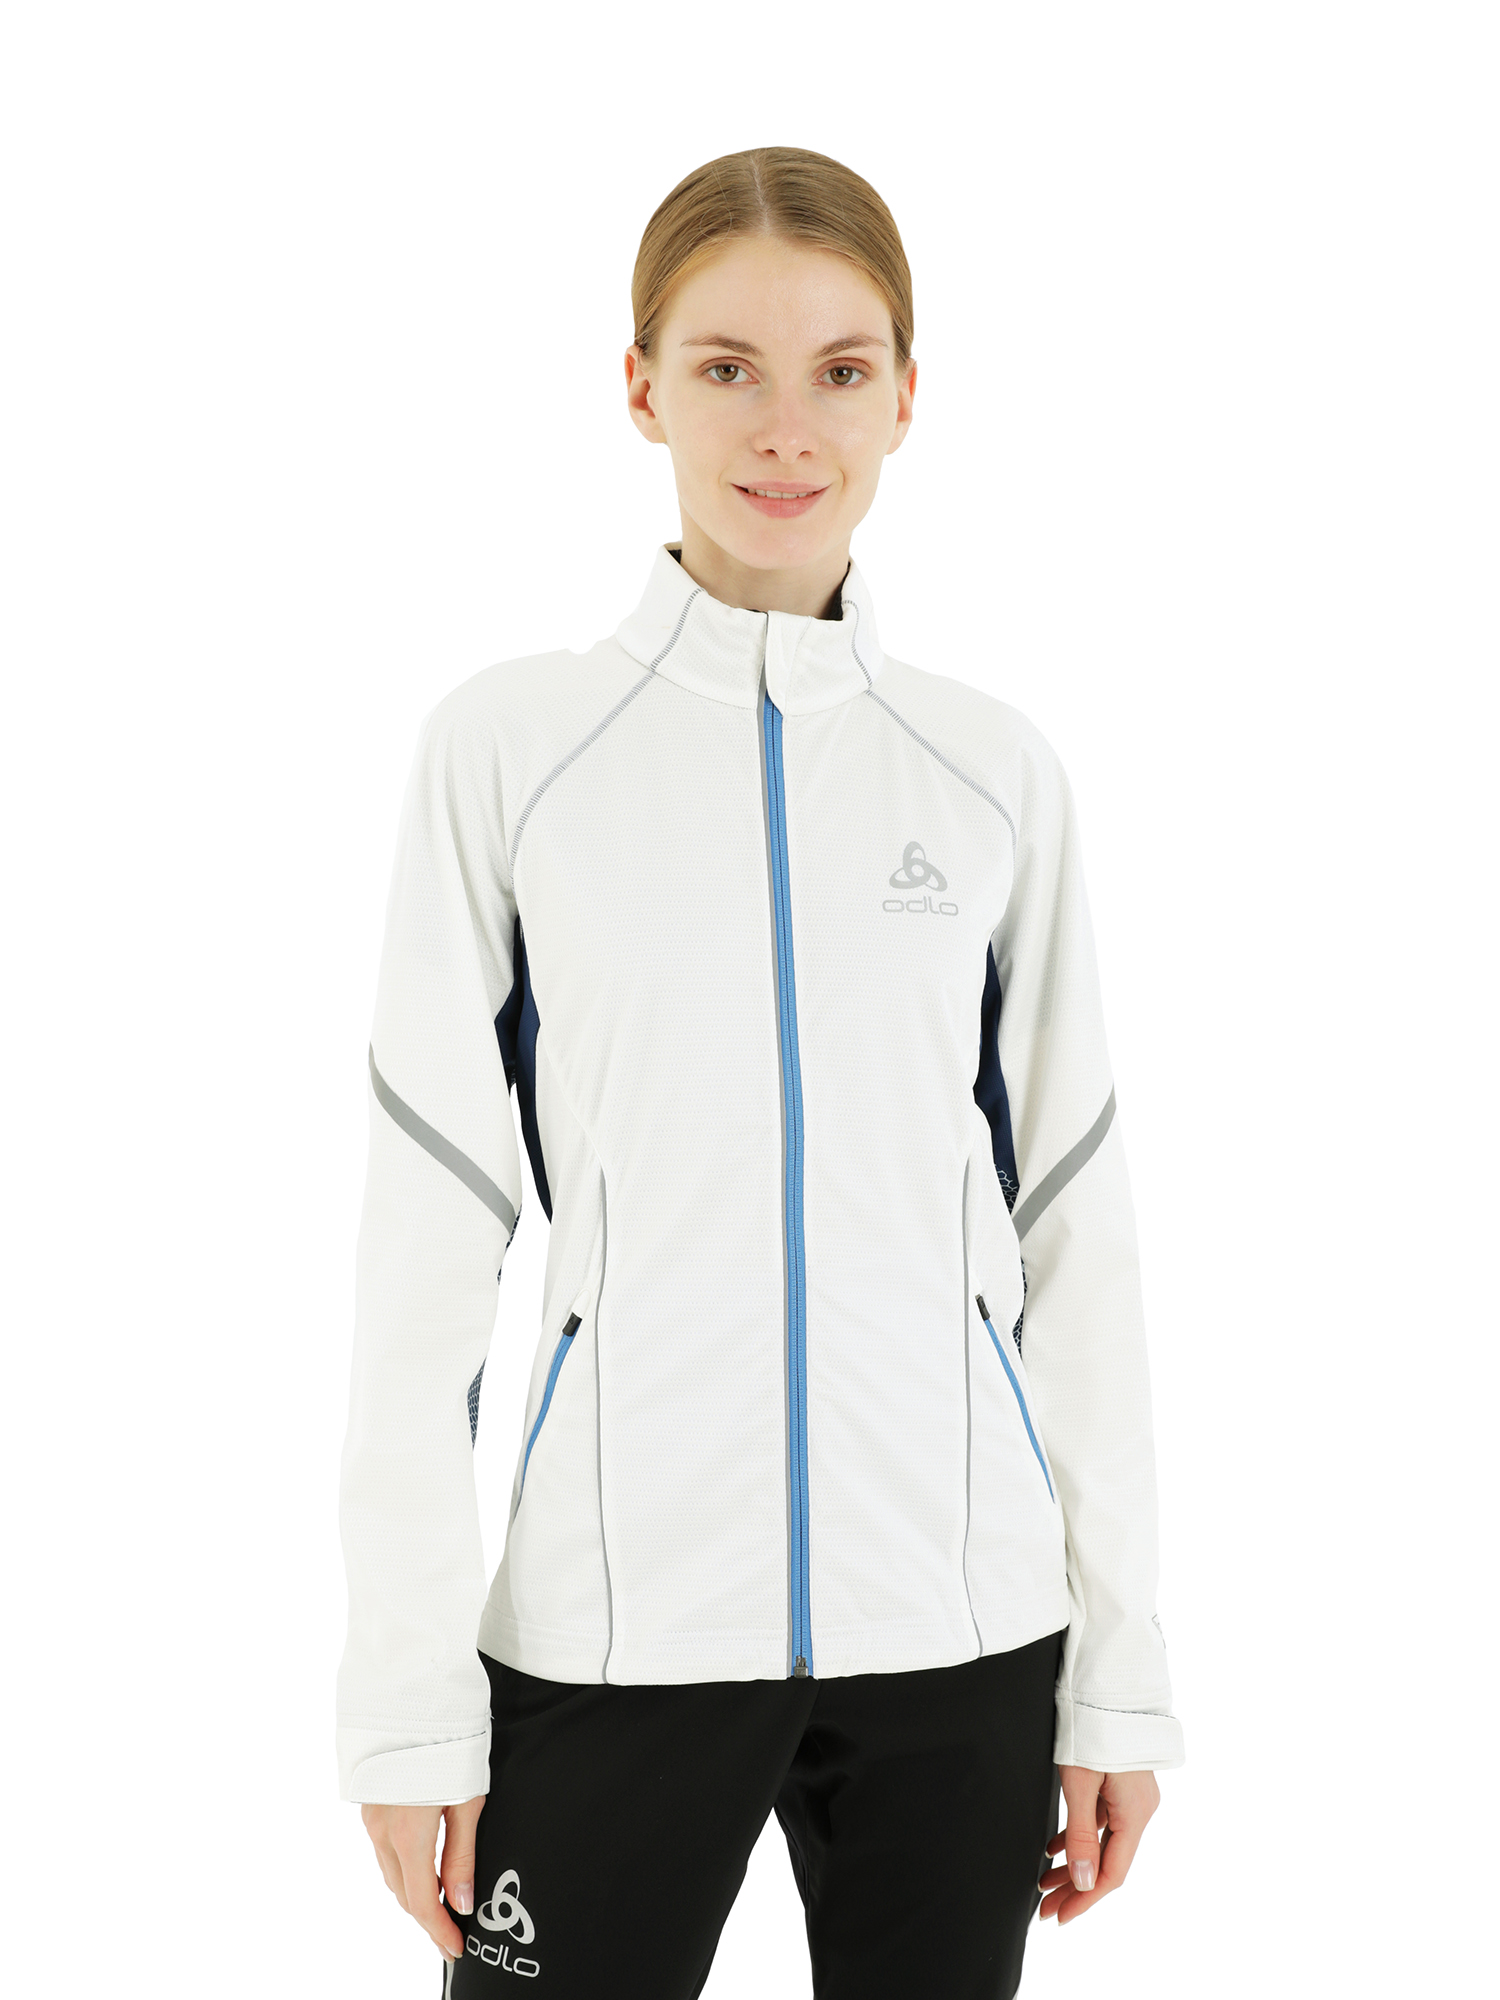 Спортивная куртка женская Odlo Jacket Frequency белая L